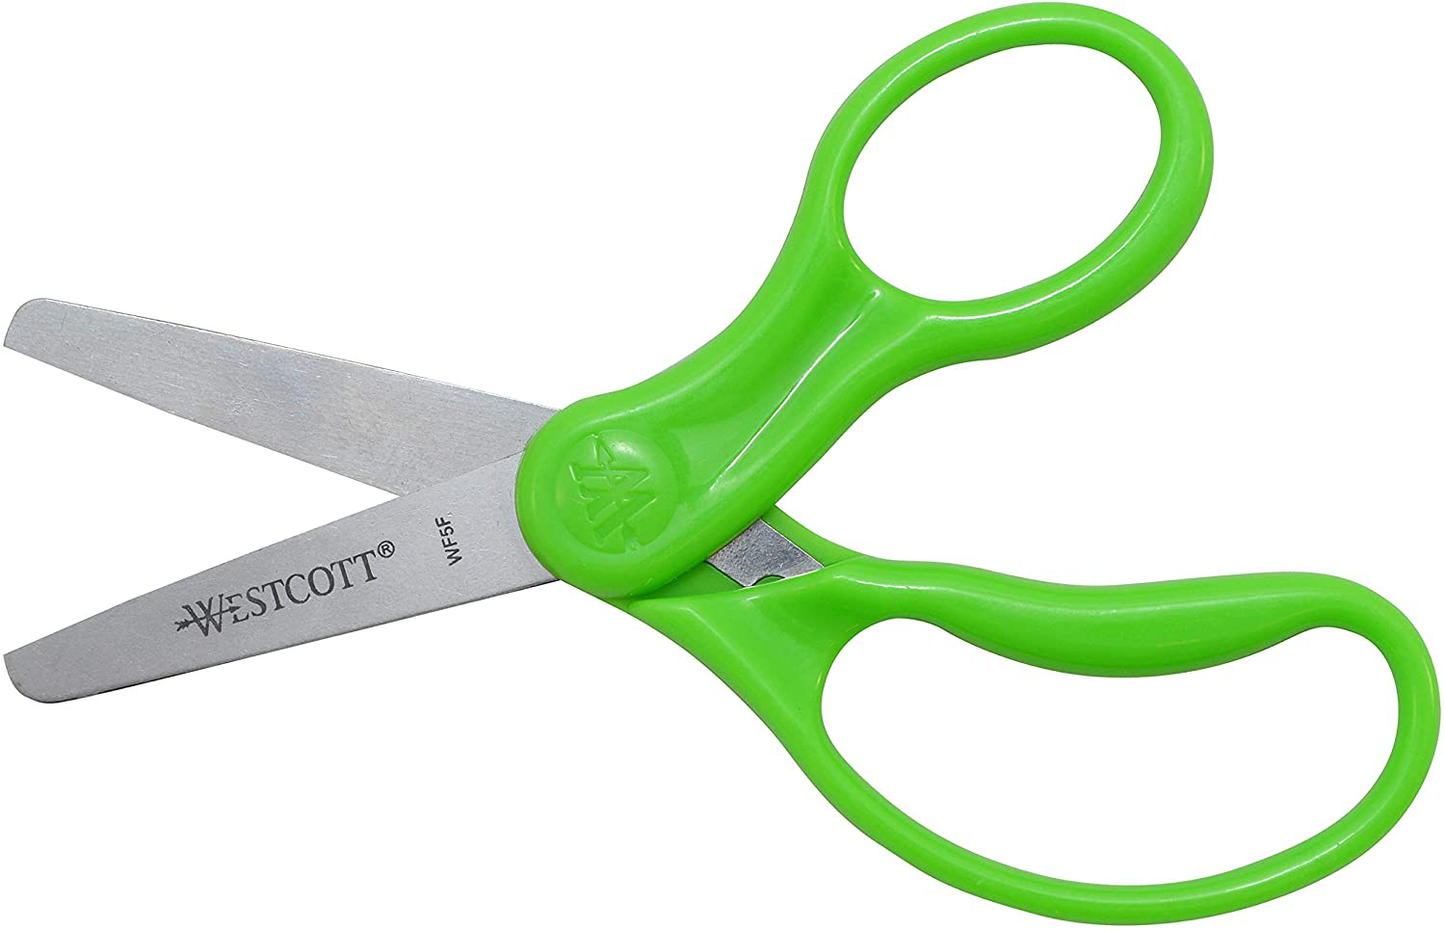 Westcott Right- & Left-Handed Scissors For Kids Assorted, 2 Pack